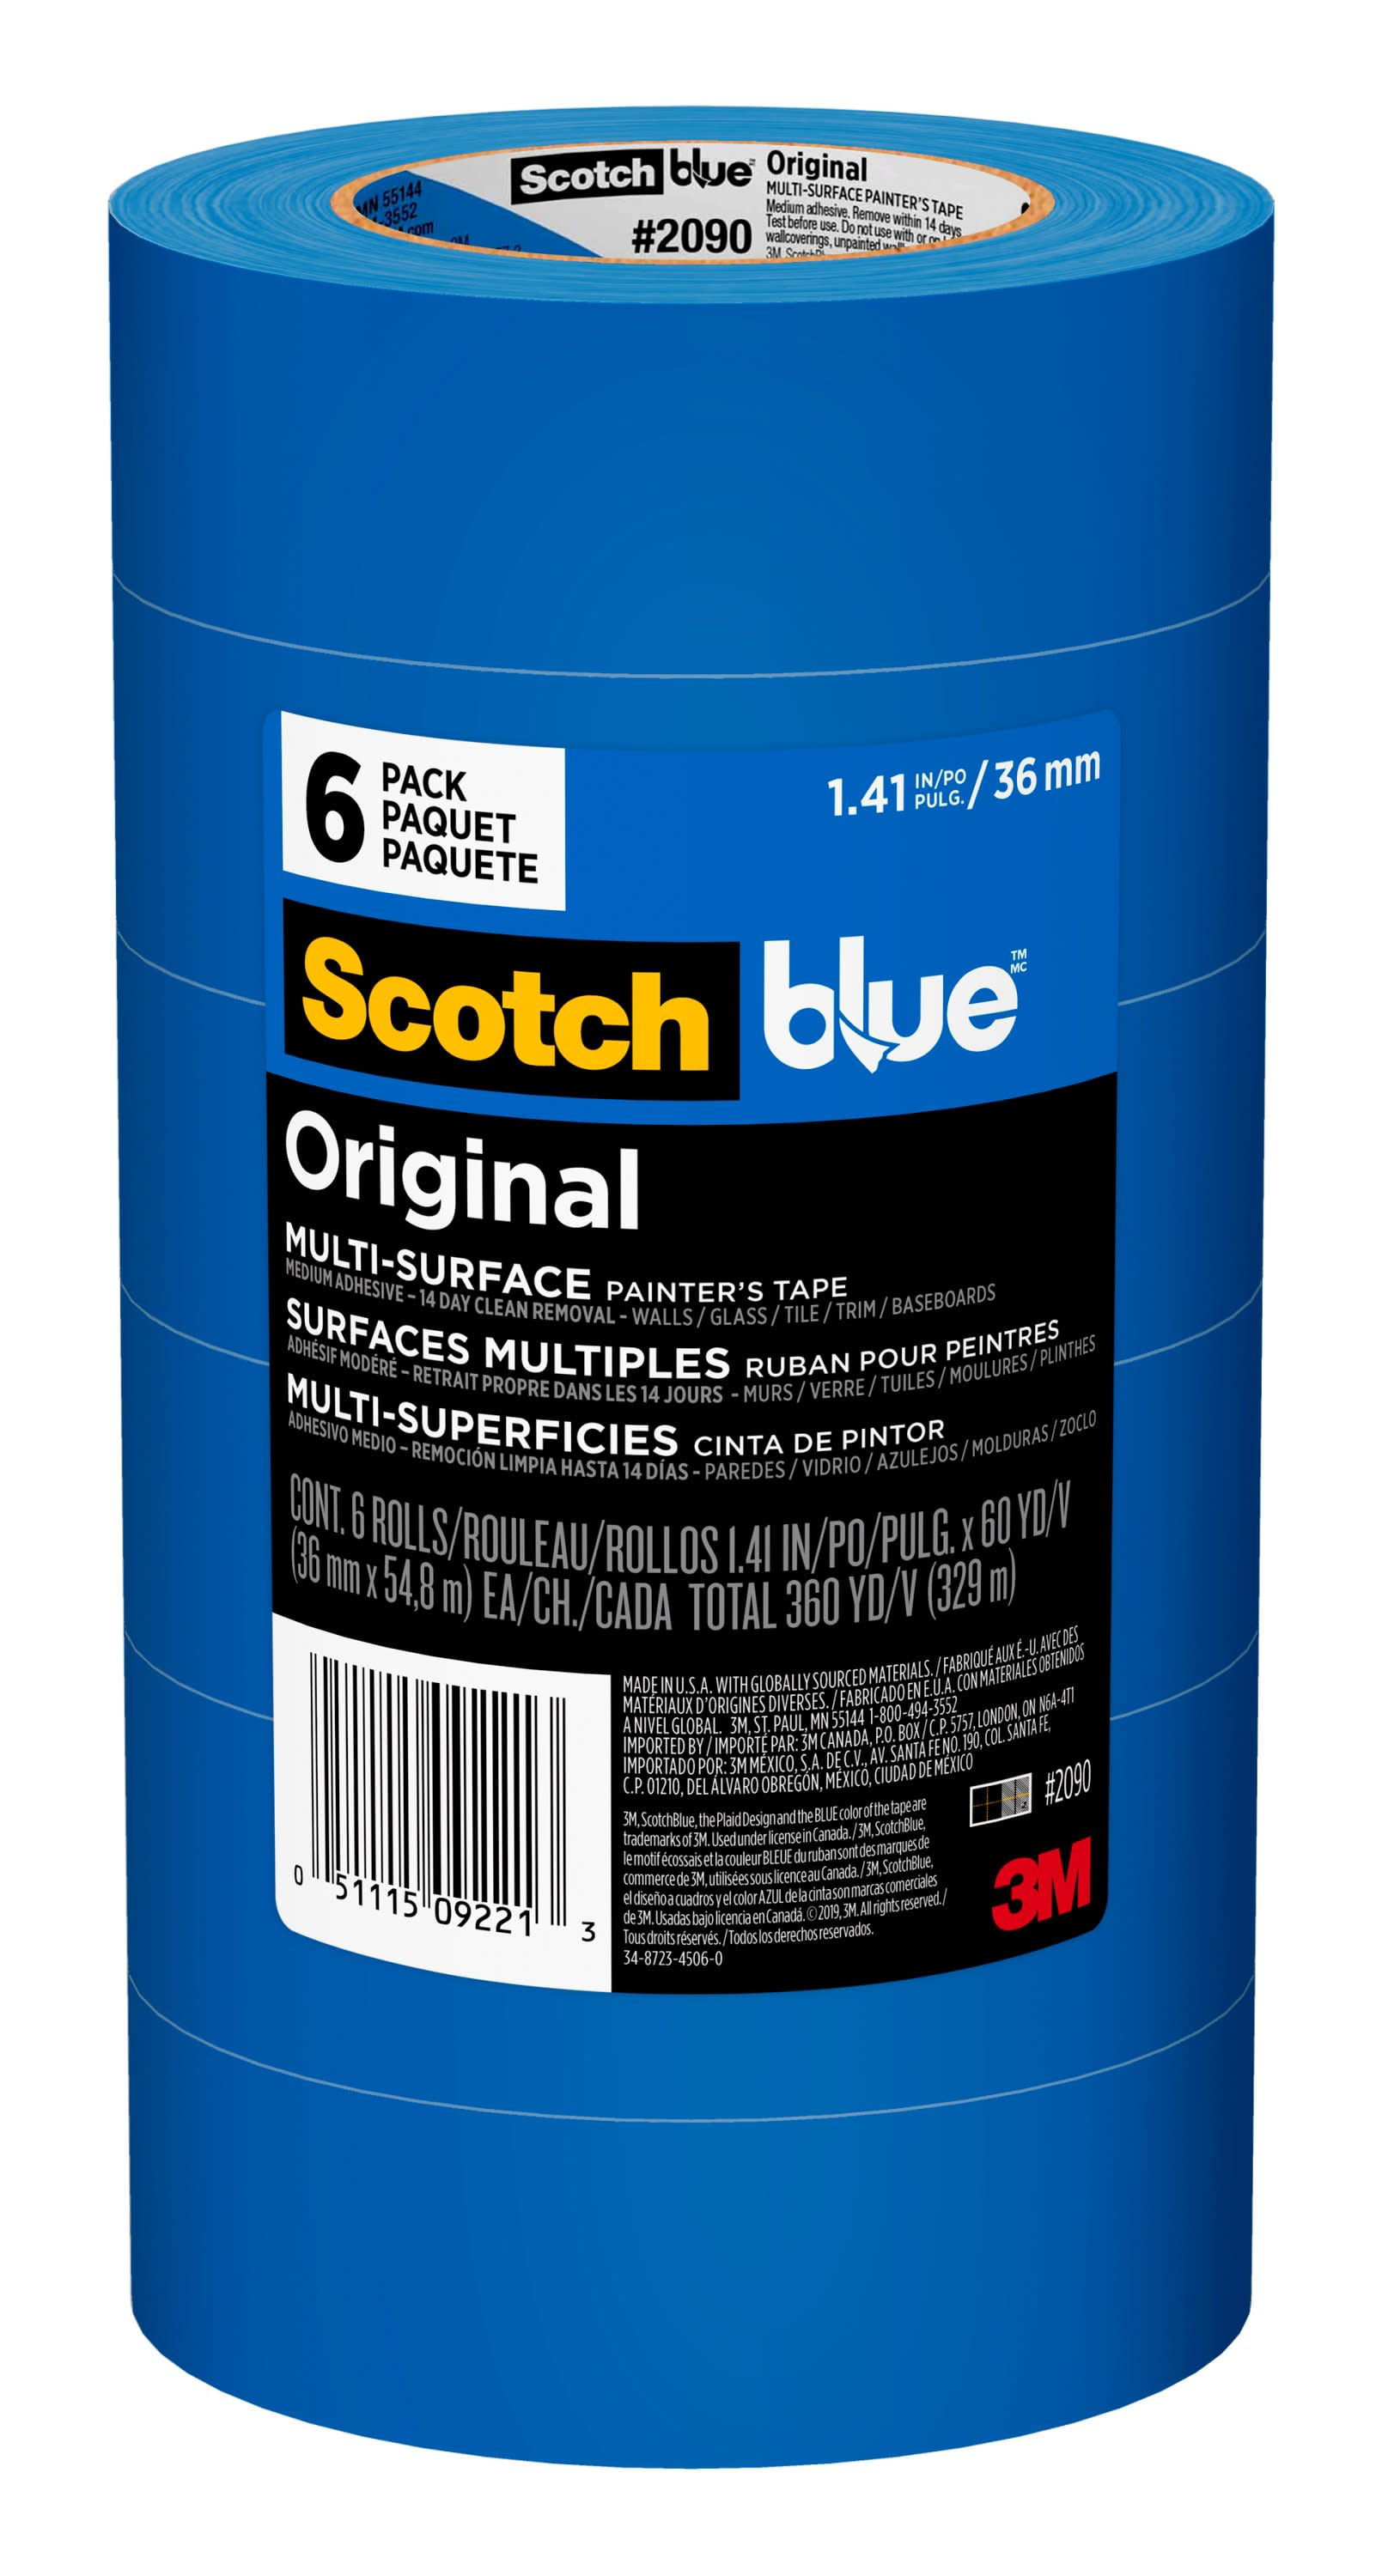 SCOTCH Blue Original Multi-Surface Tape 6 Pack 1.41in 36mm 